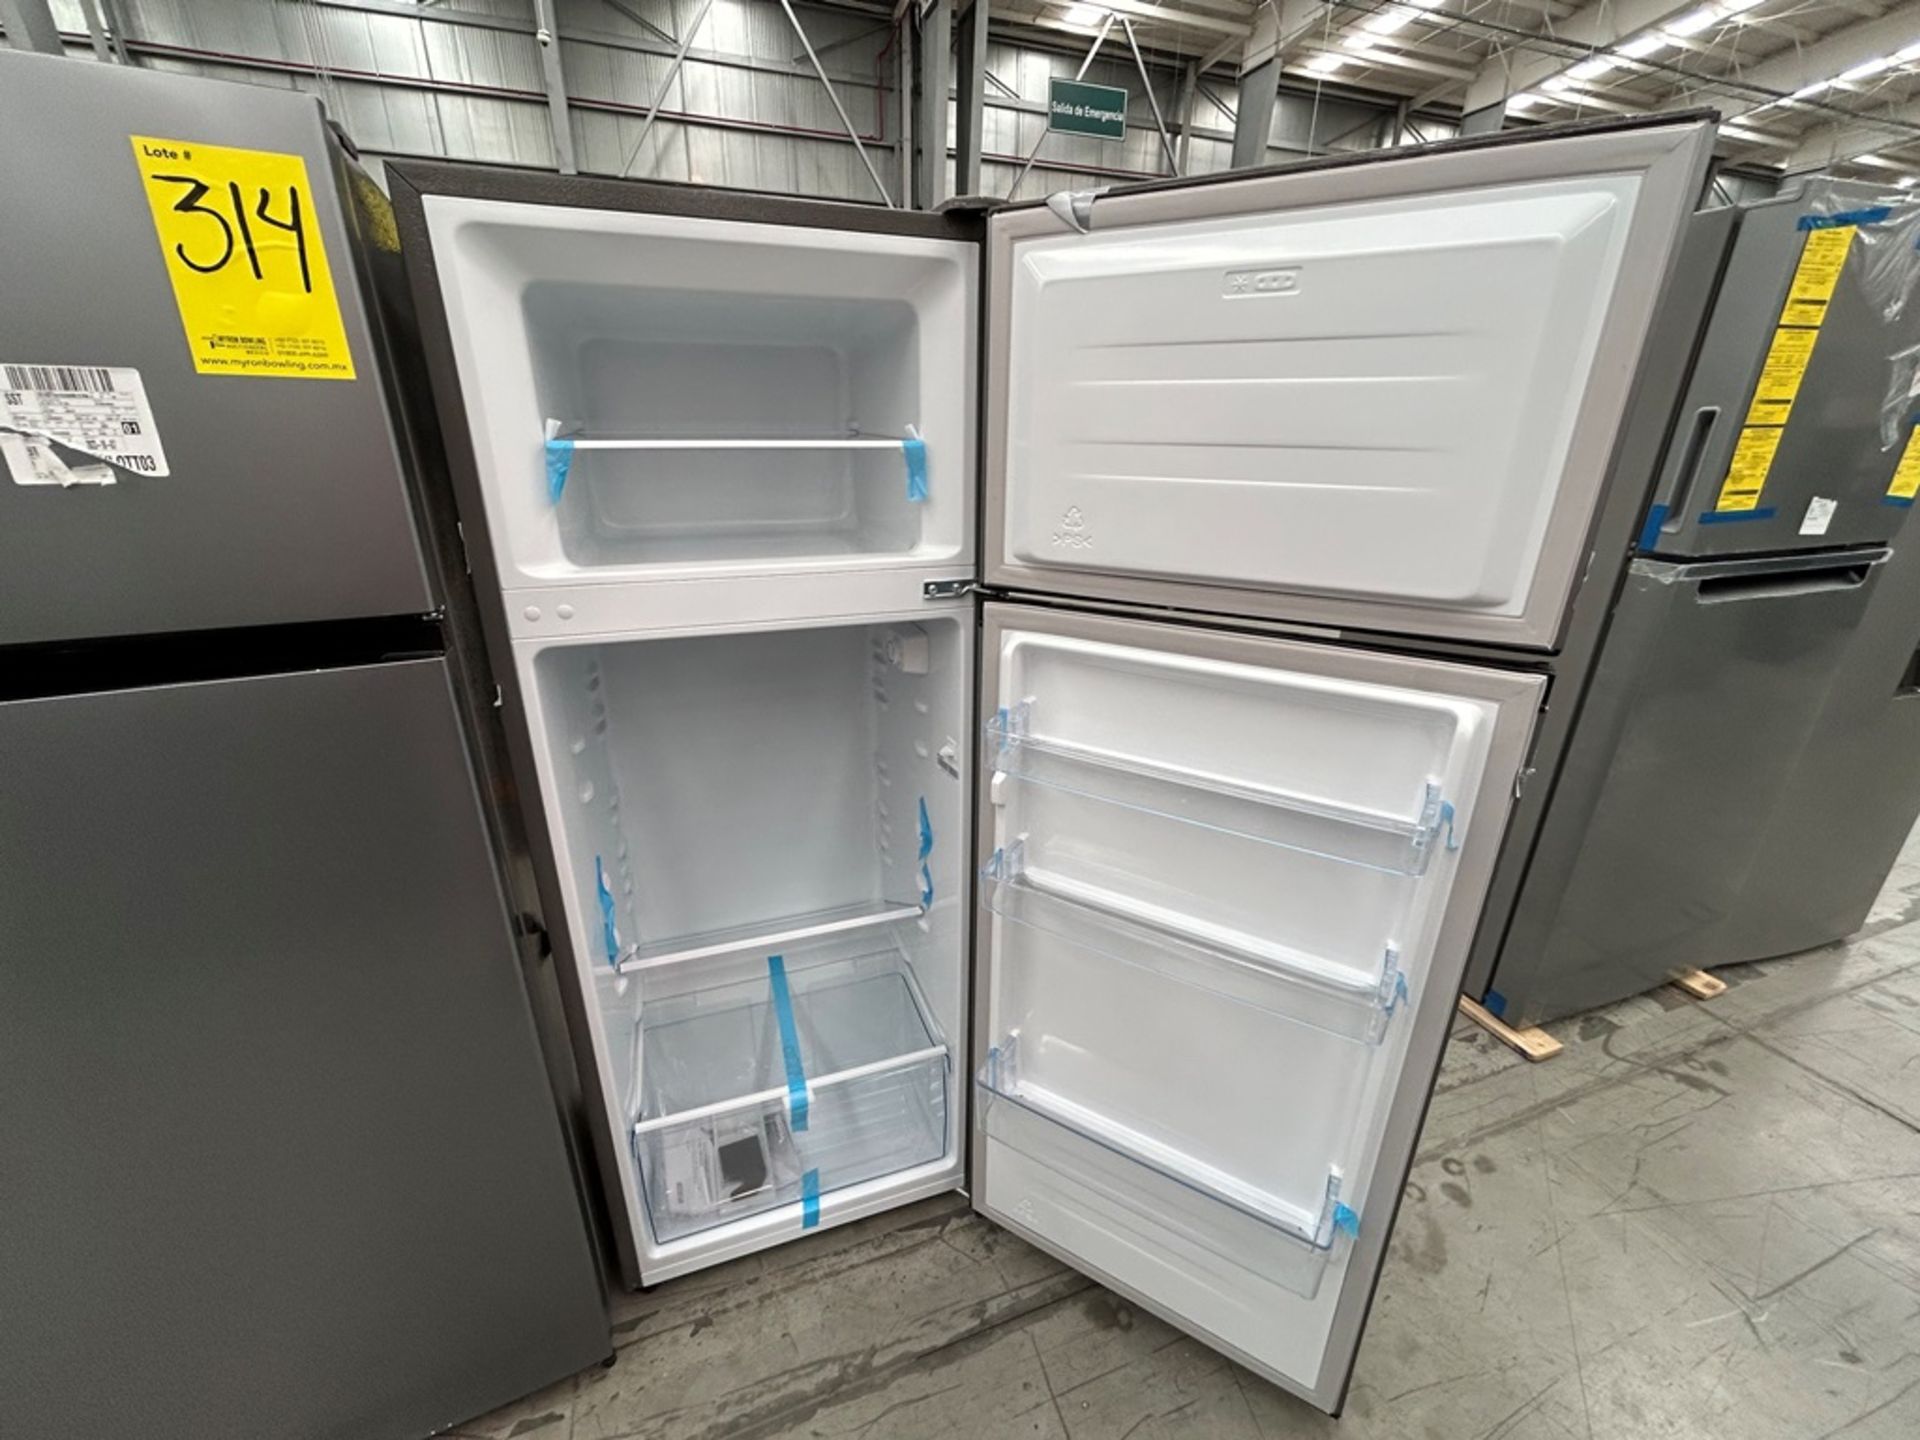 Lote de 2 Refrigeradores, contiene: 1 Refrigerador Marca HISENSE, Modelo RT80D6AGX Serie VP20148, C - Image 4 of 6